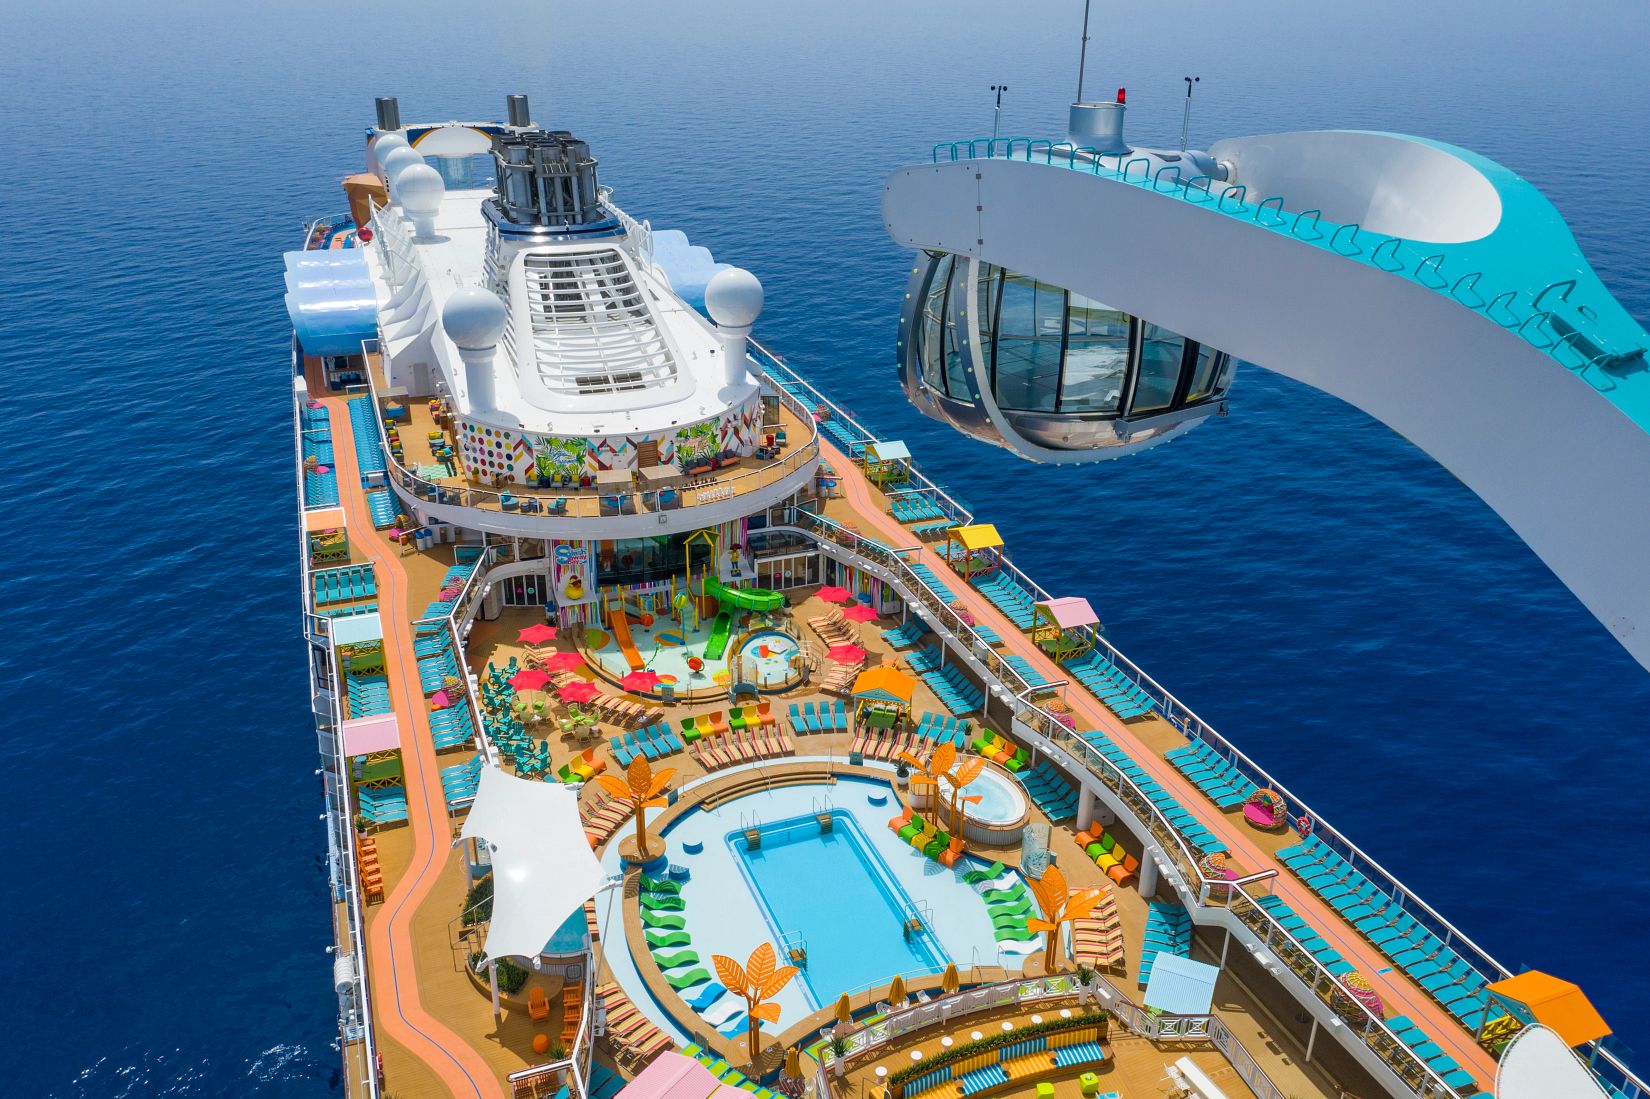 Birds eye view of cruise ship amenities